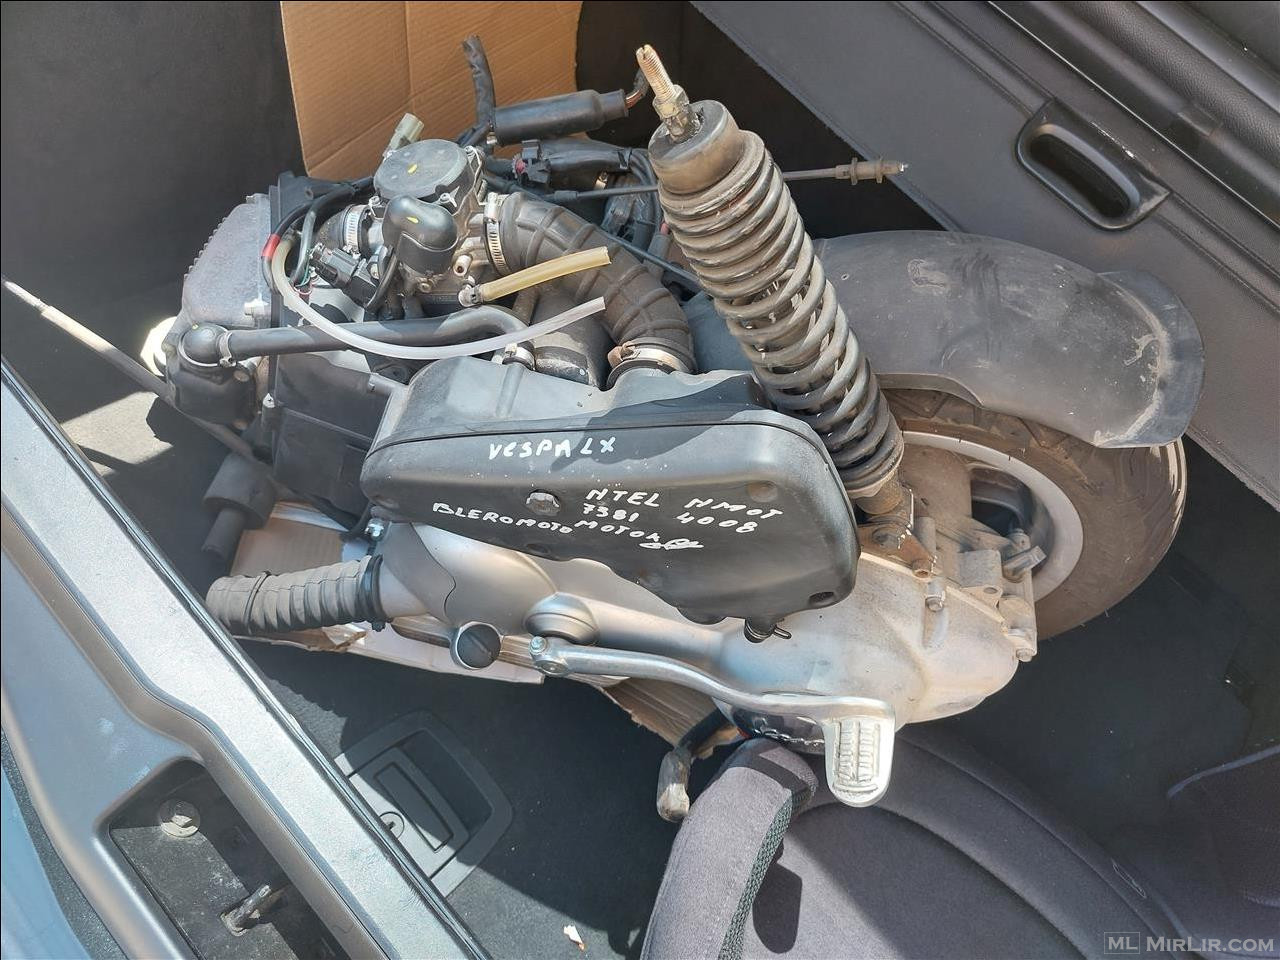 Motor per Vespa lx 125cc 2008